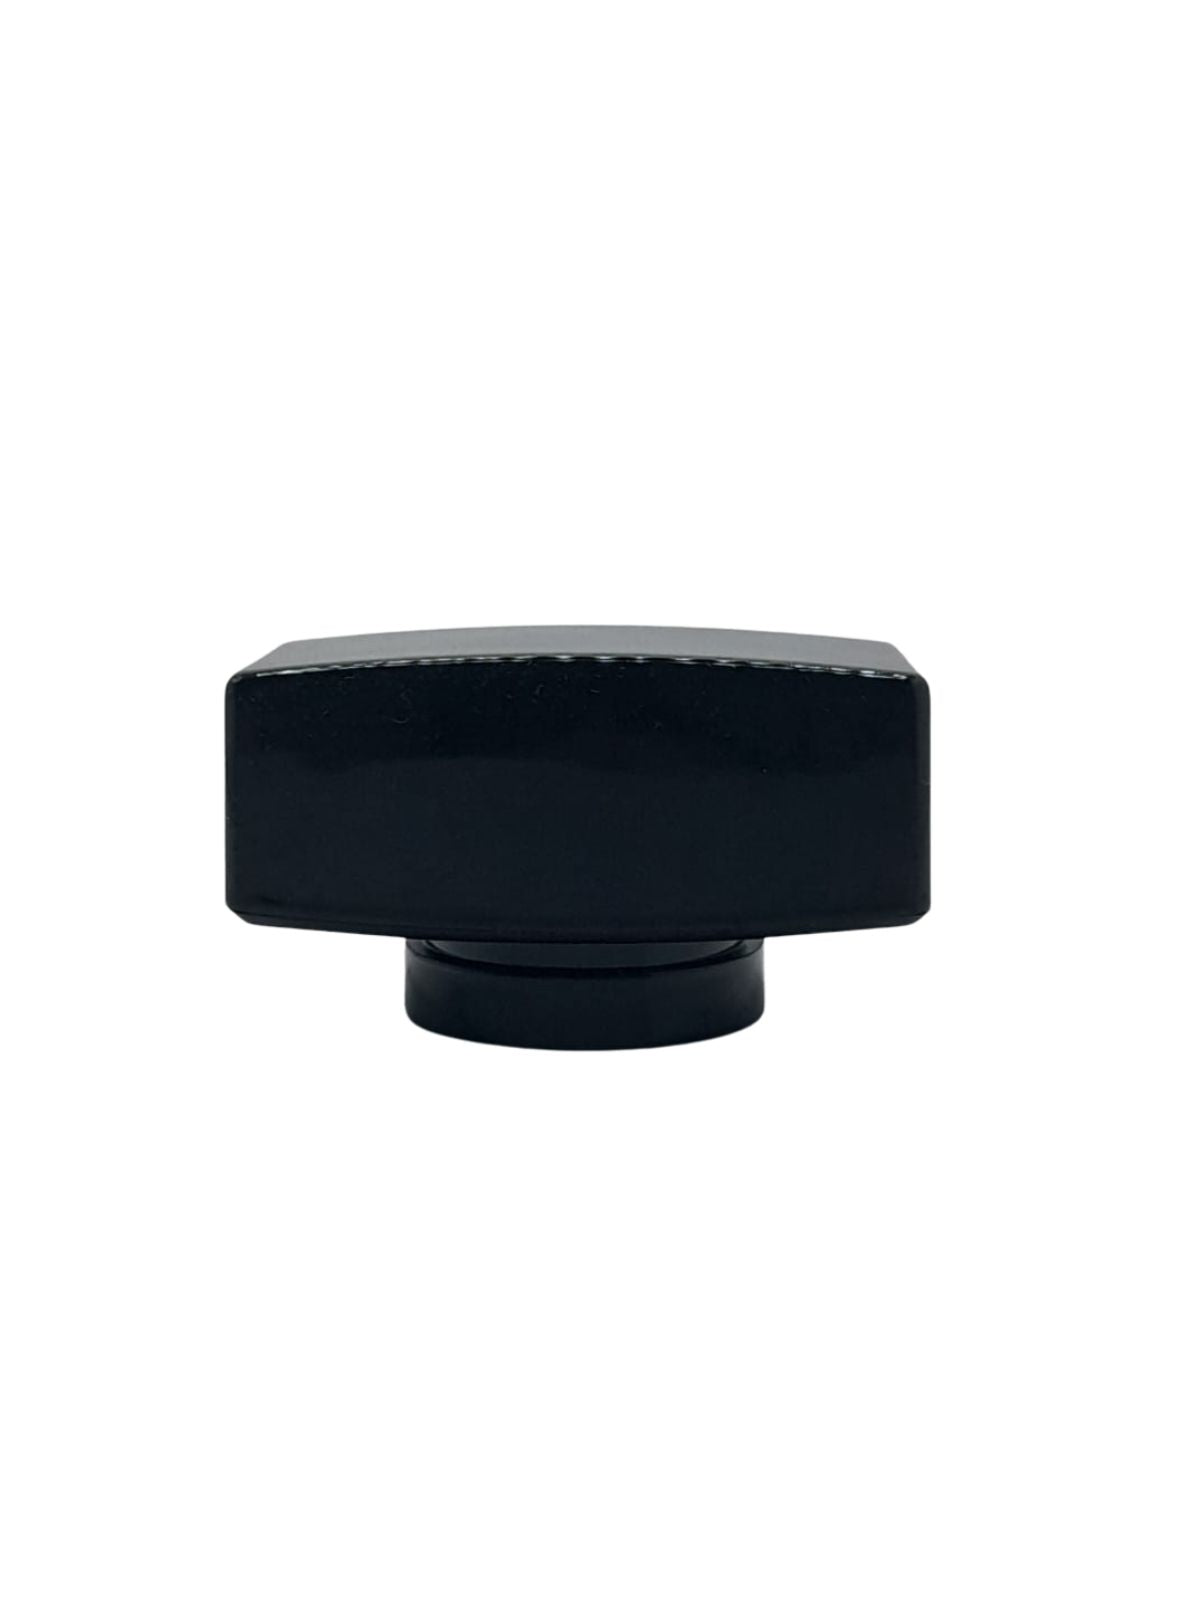 CP014 - Black Plastic Cap